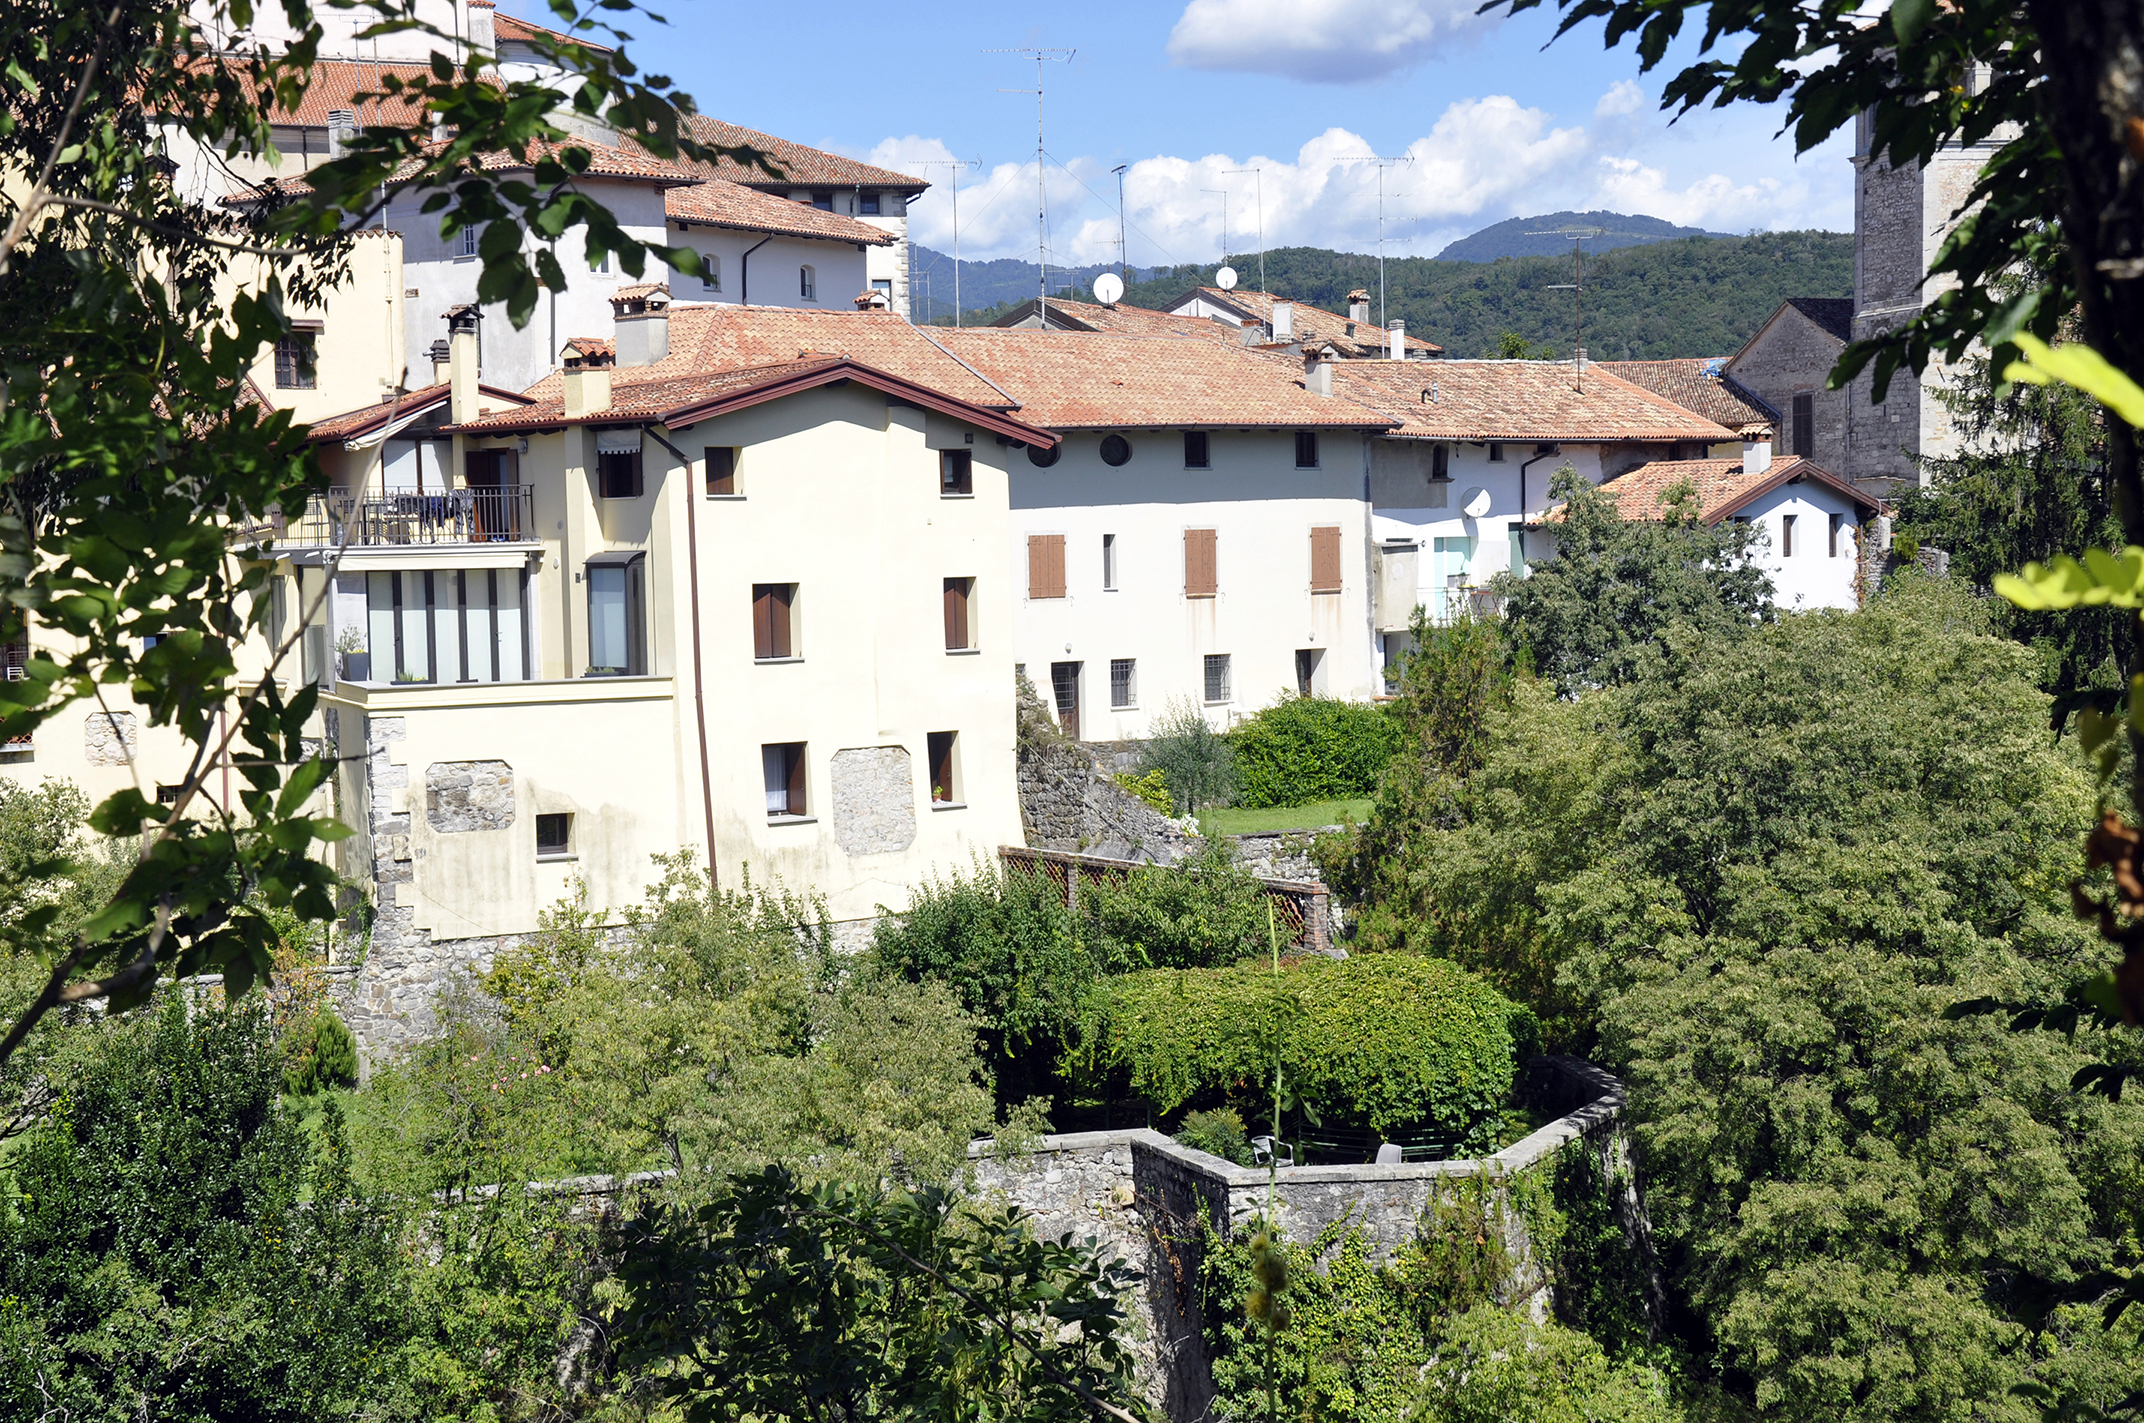 Casa Bernardi (casa, privata) - Cividale del Friuli (UD) 